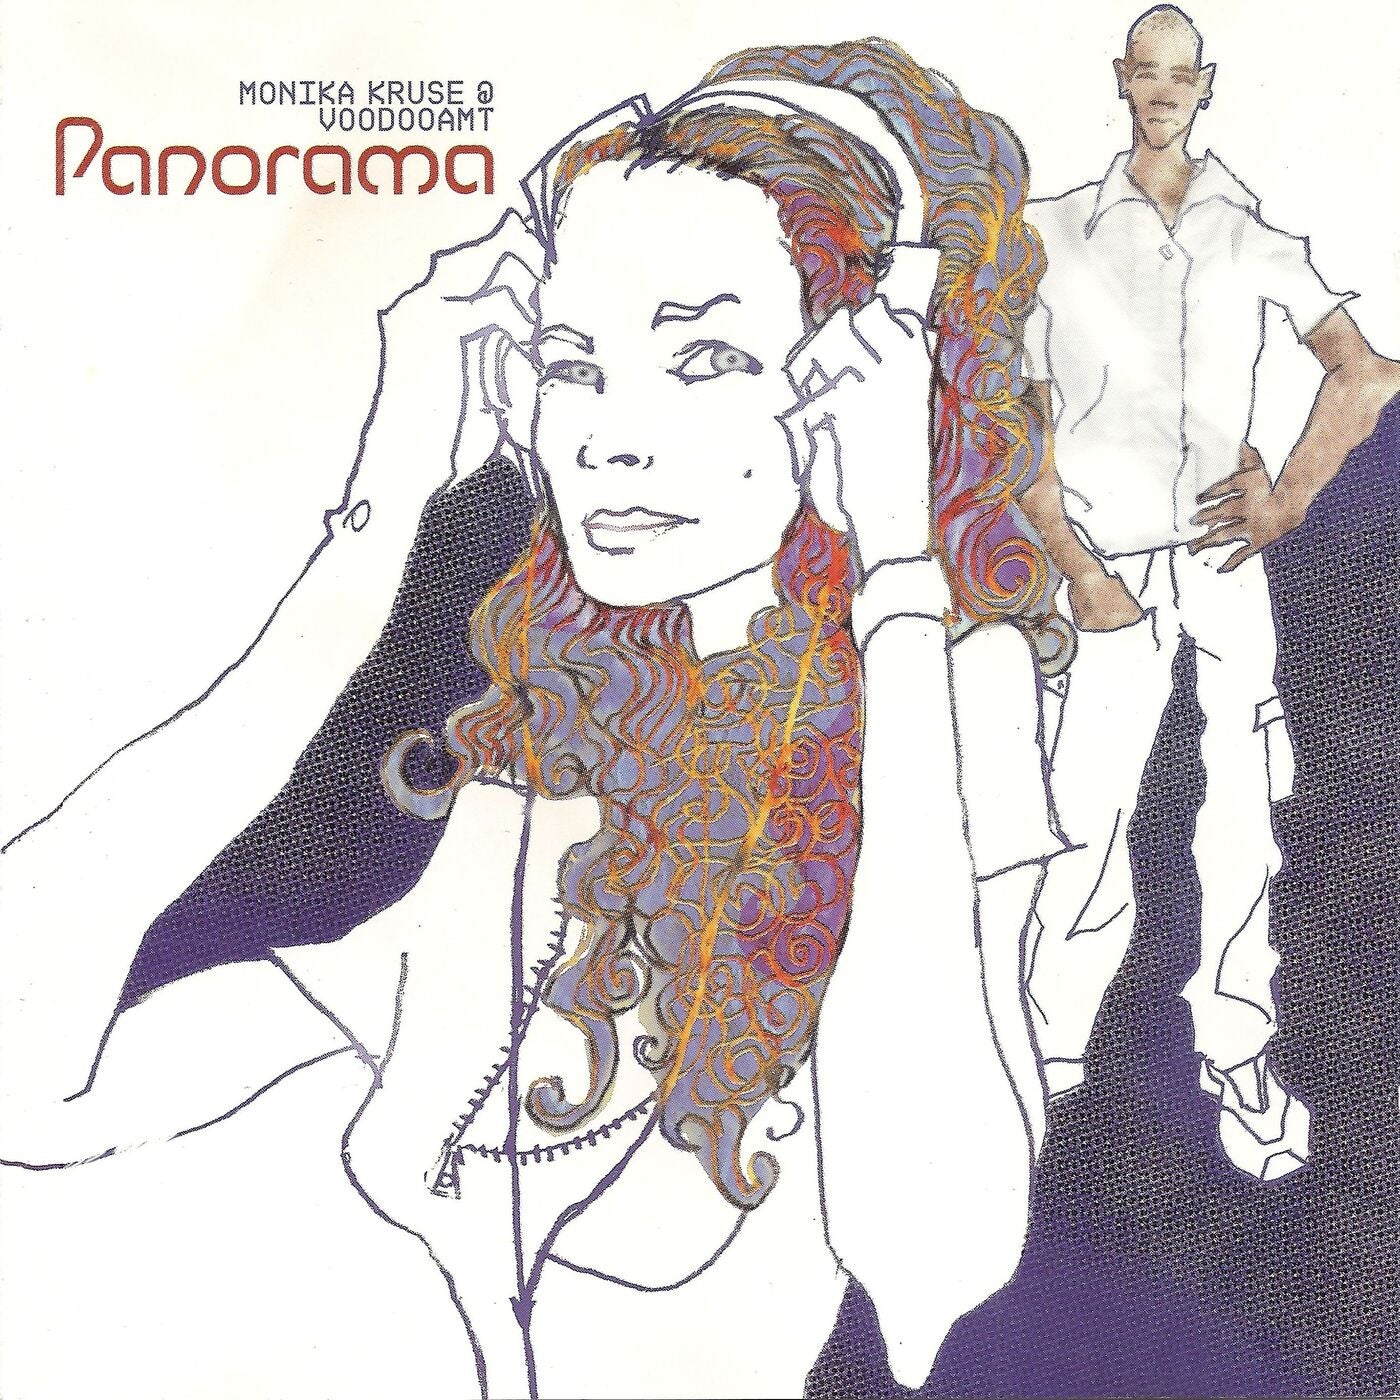 Monika Kruse – Panorama (Remastered 2021)